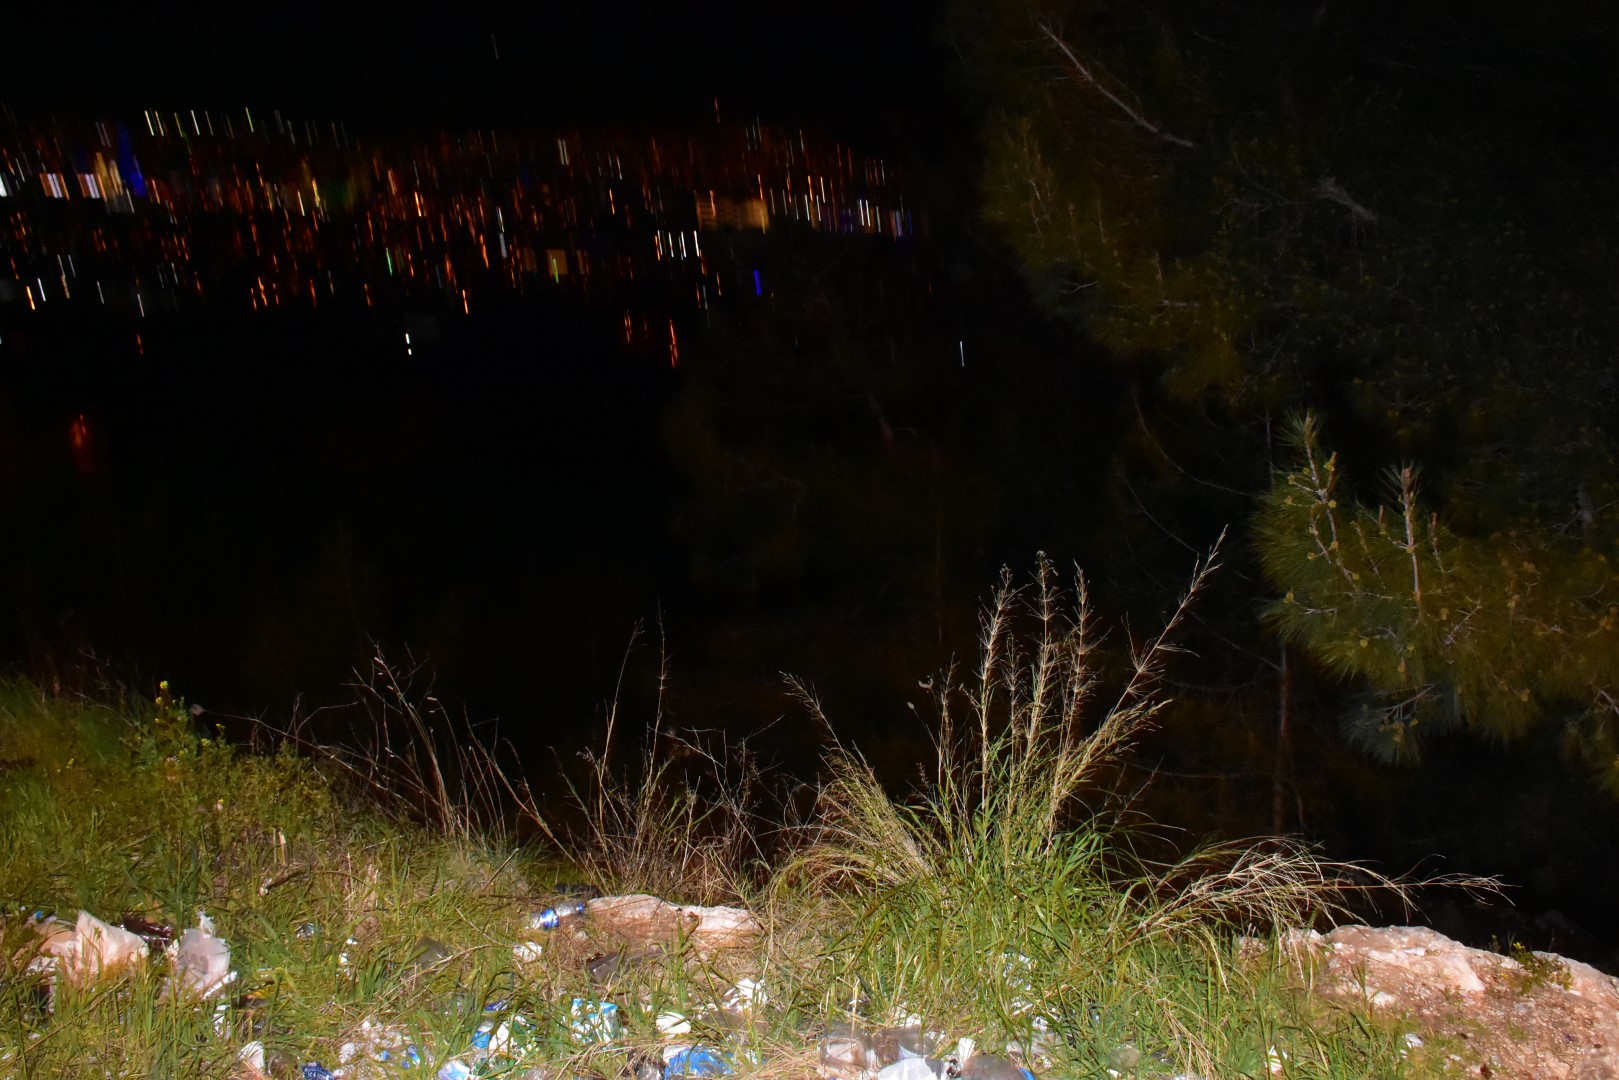 İzmir'de ormanlık alanda kaburga ve kemik parçaları bulundu. Polisler harekete geçti